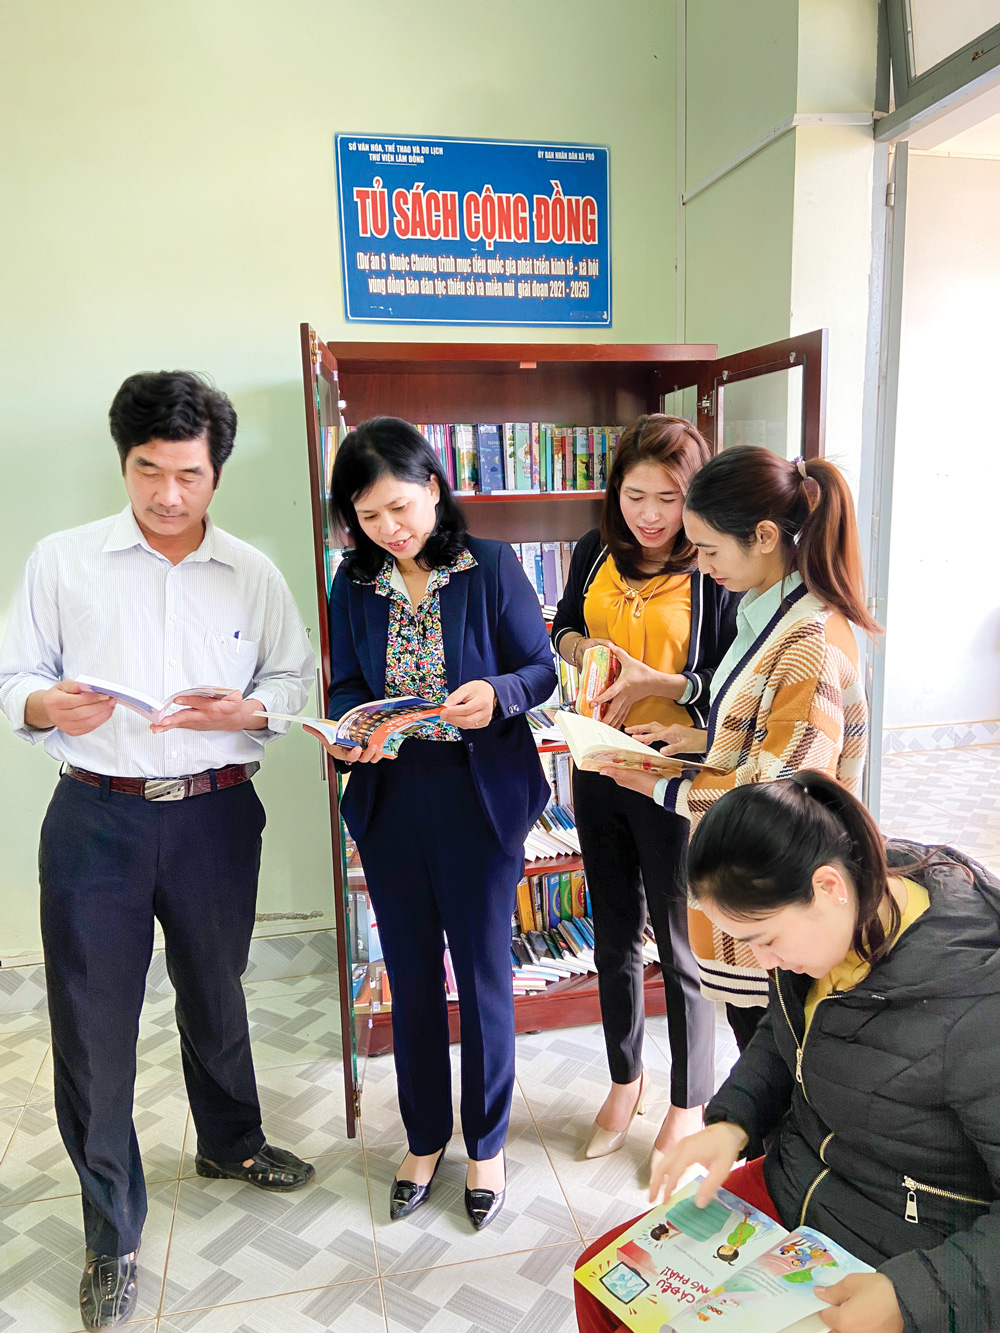 Lâm Đồng: Xây dựng tủ sách cộng đồng, phát triển văn hóa đọc ở vùng đồng bào DTTS - Ảnh 2.